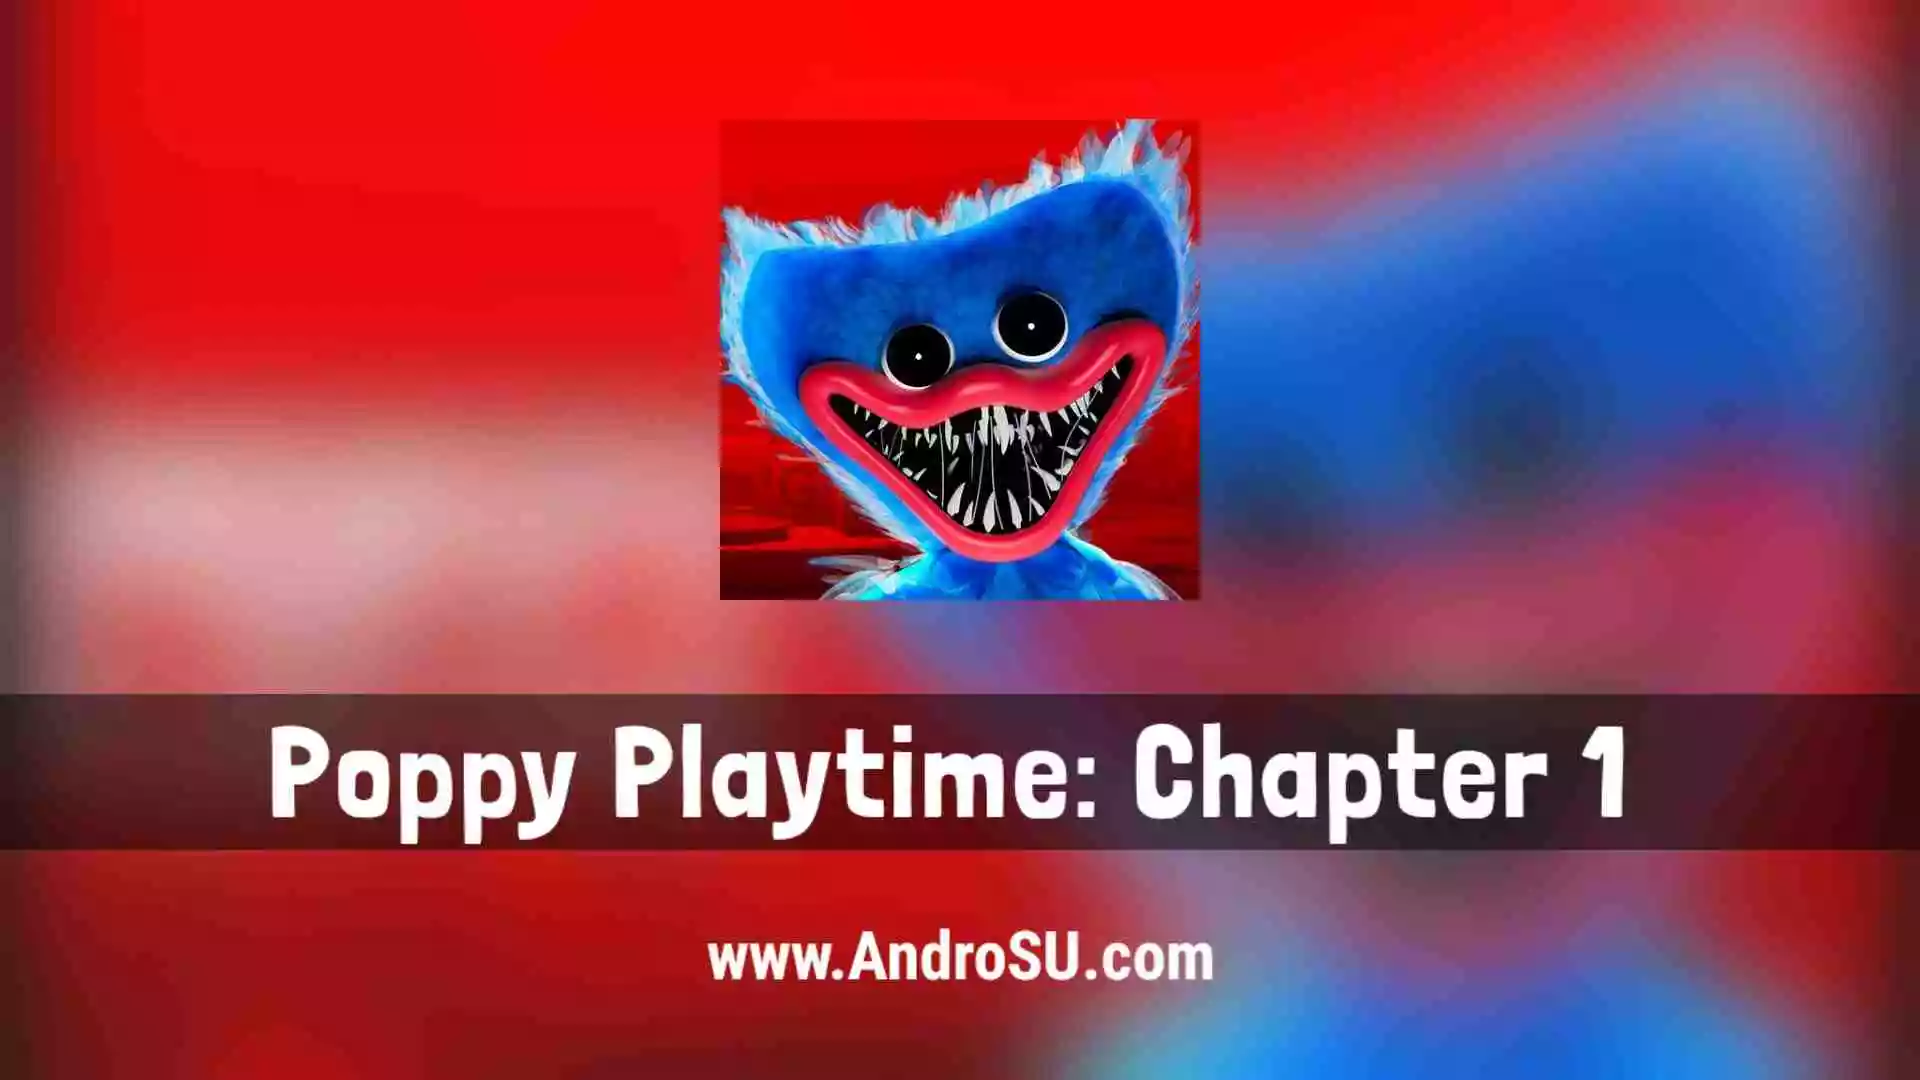 Poppy Playtime Chapter 1 APK, Poppy Playtime APK, Poppy Playtime Android